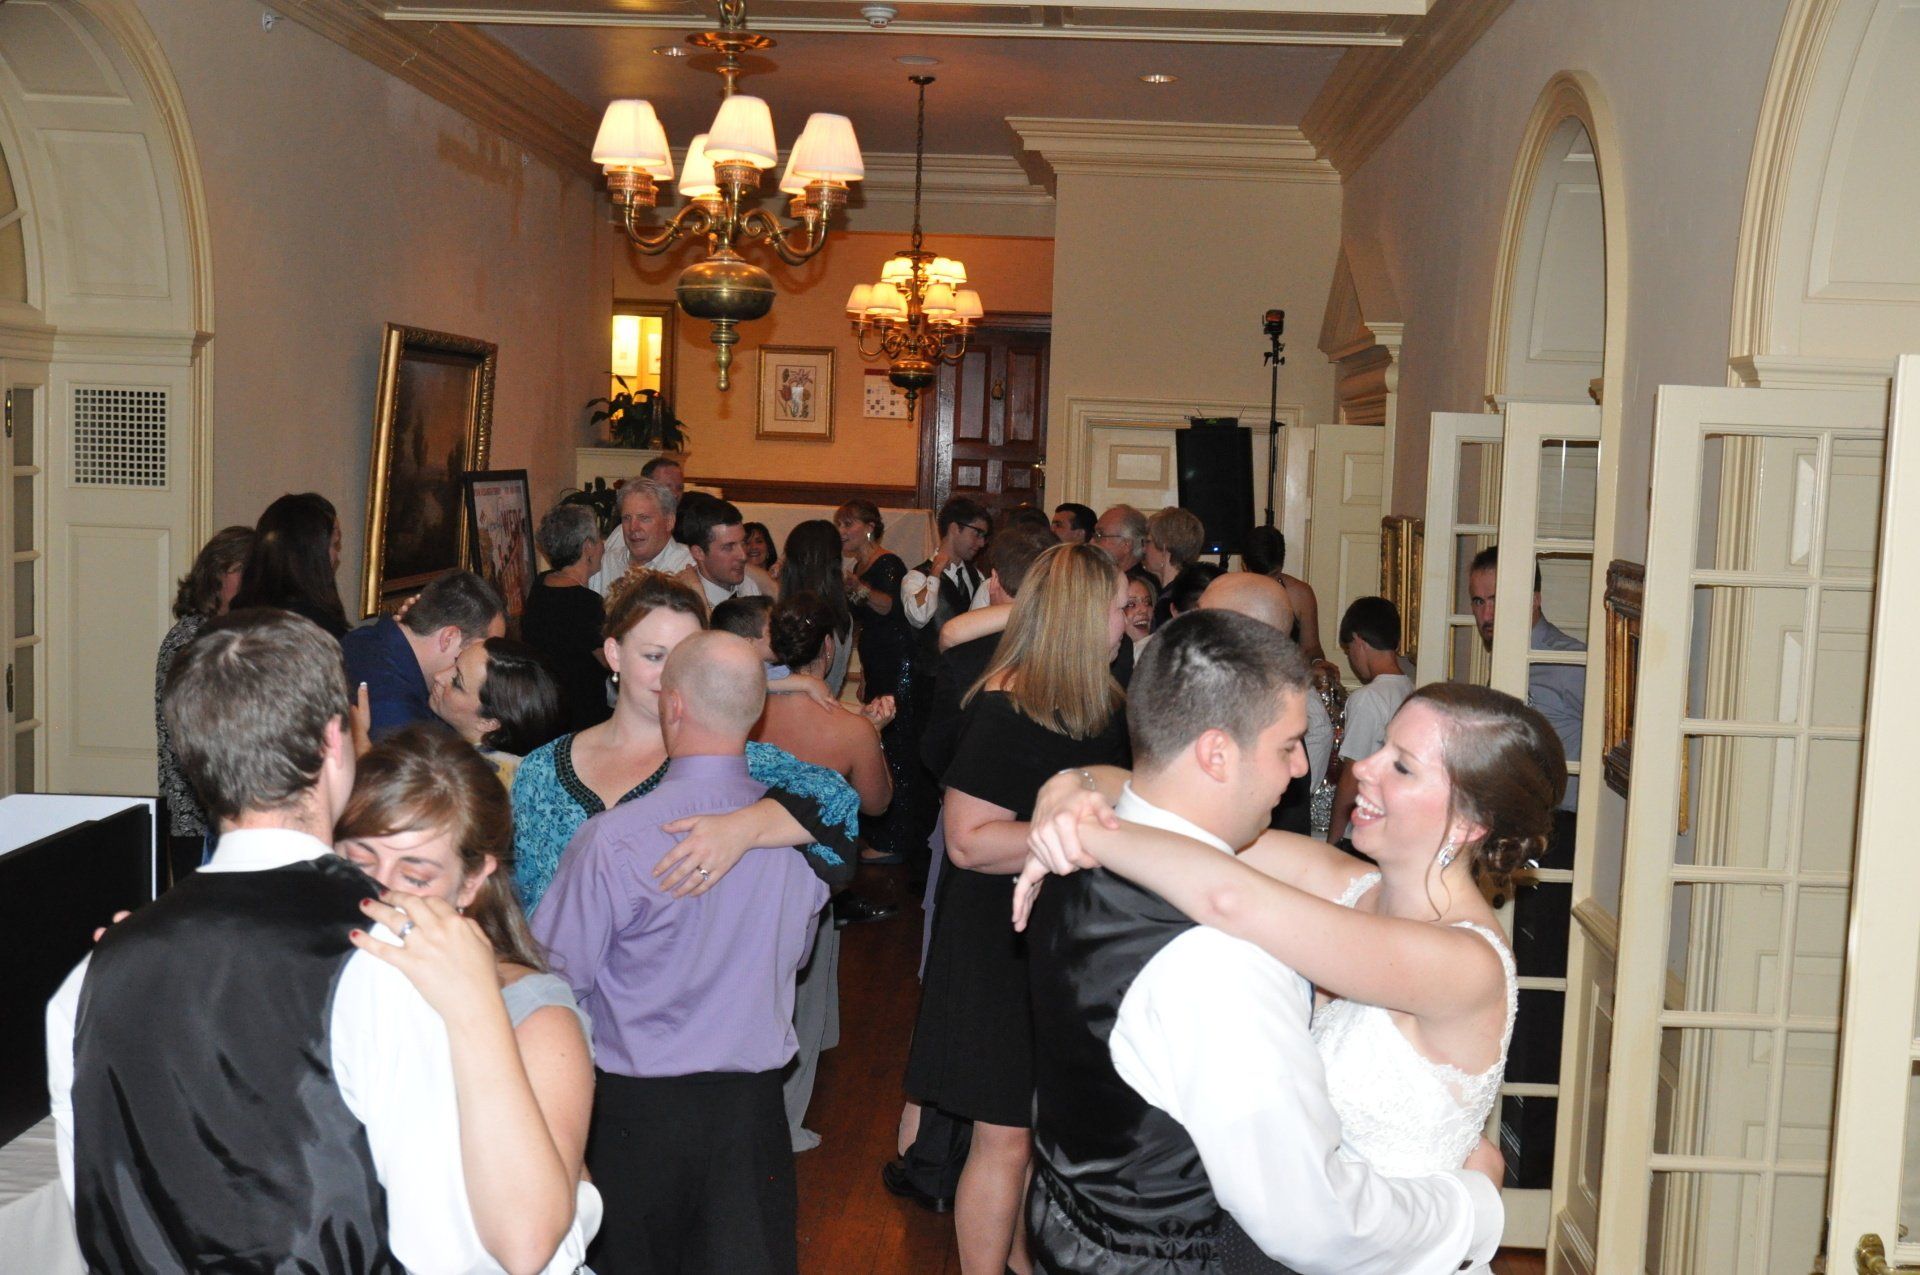 wedding dance floor exeter inn, exeter, New Hampshire